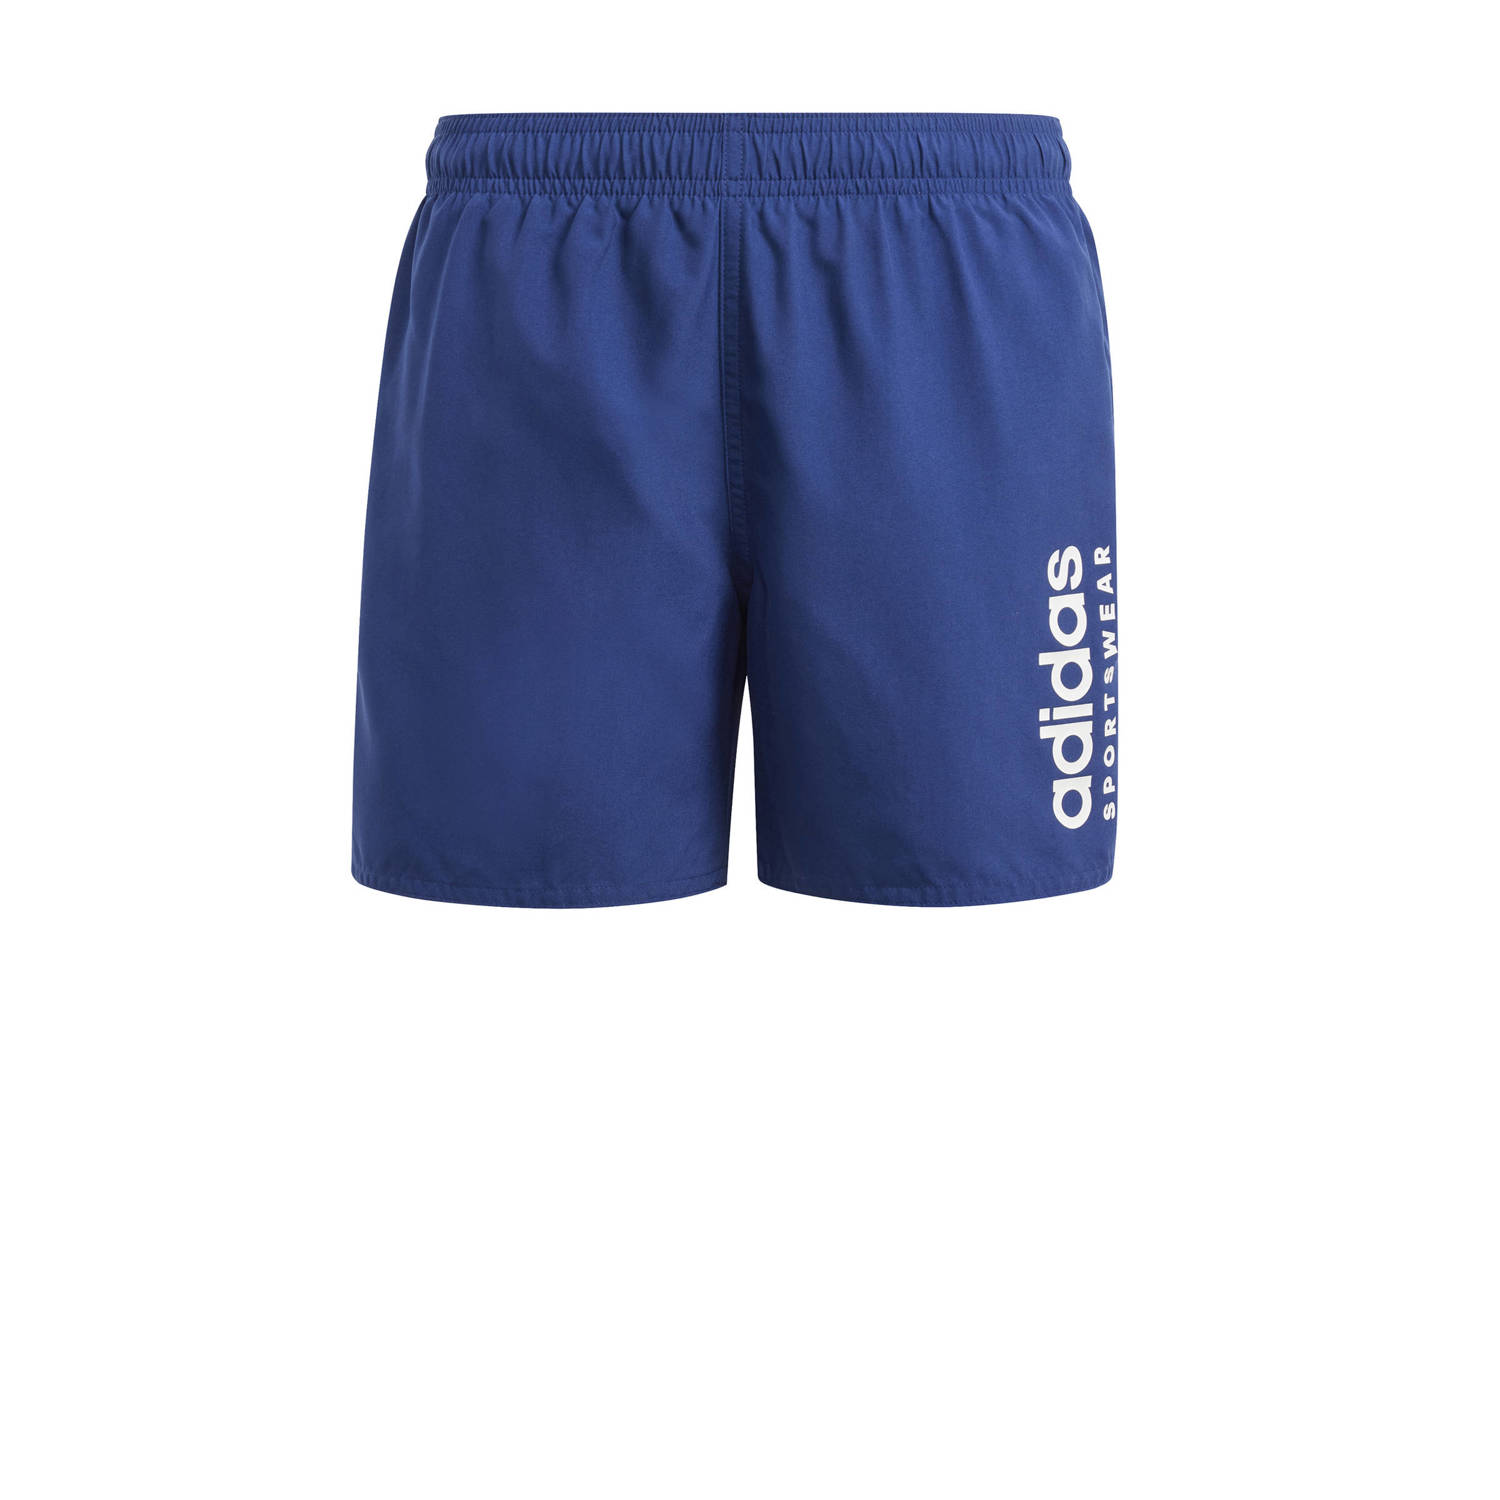 Adidas Perfor ce zwemshort blauw Polyester Effen 116